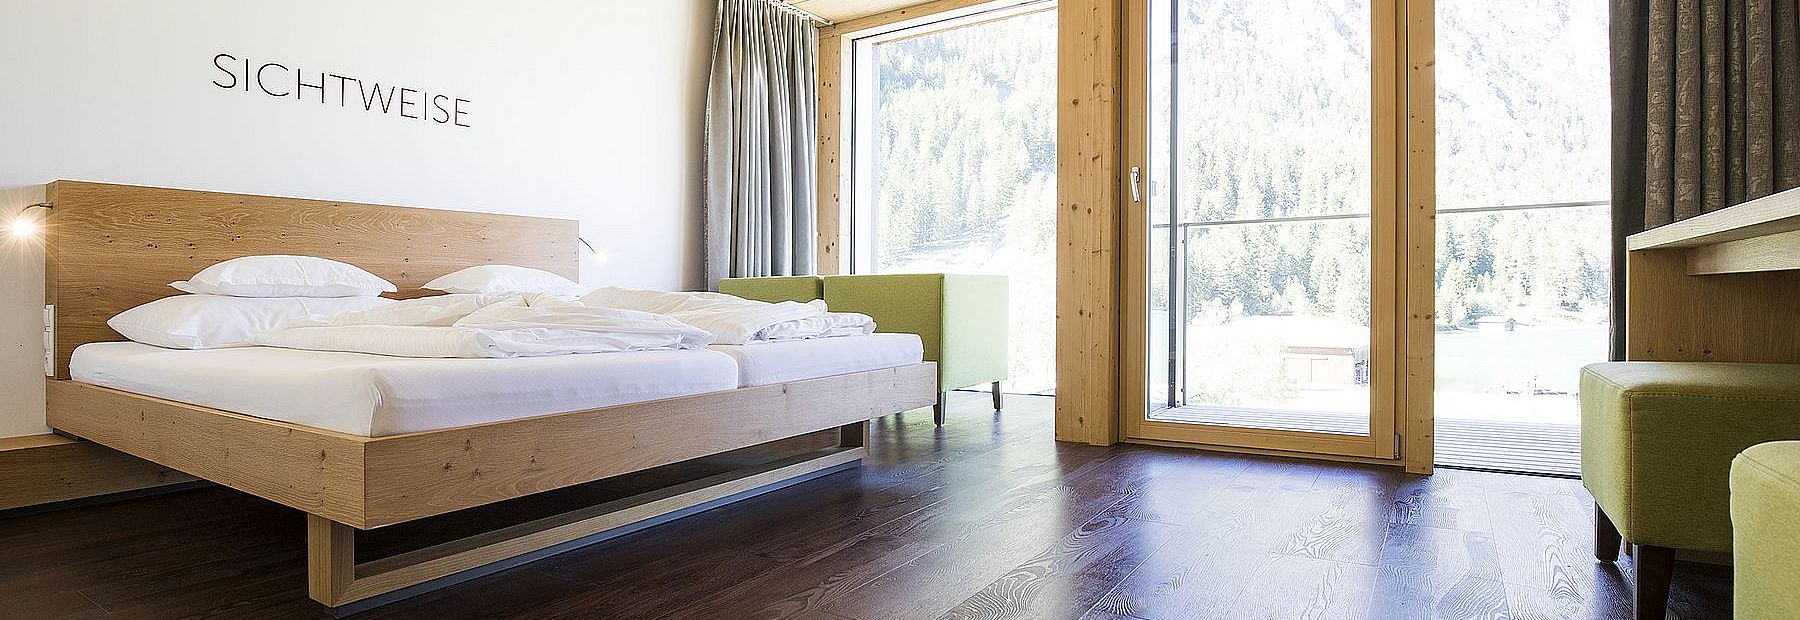 Hotelzimmer mit Doppelbett aus Holz auf Parkettboden und Ausblick auf den Wald im Sommer